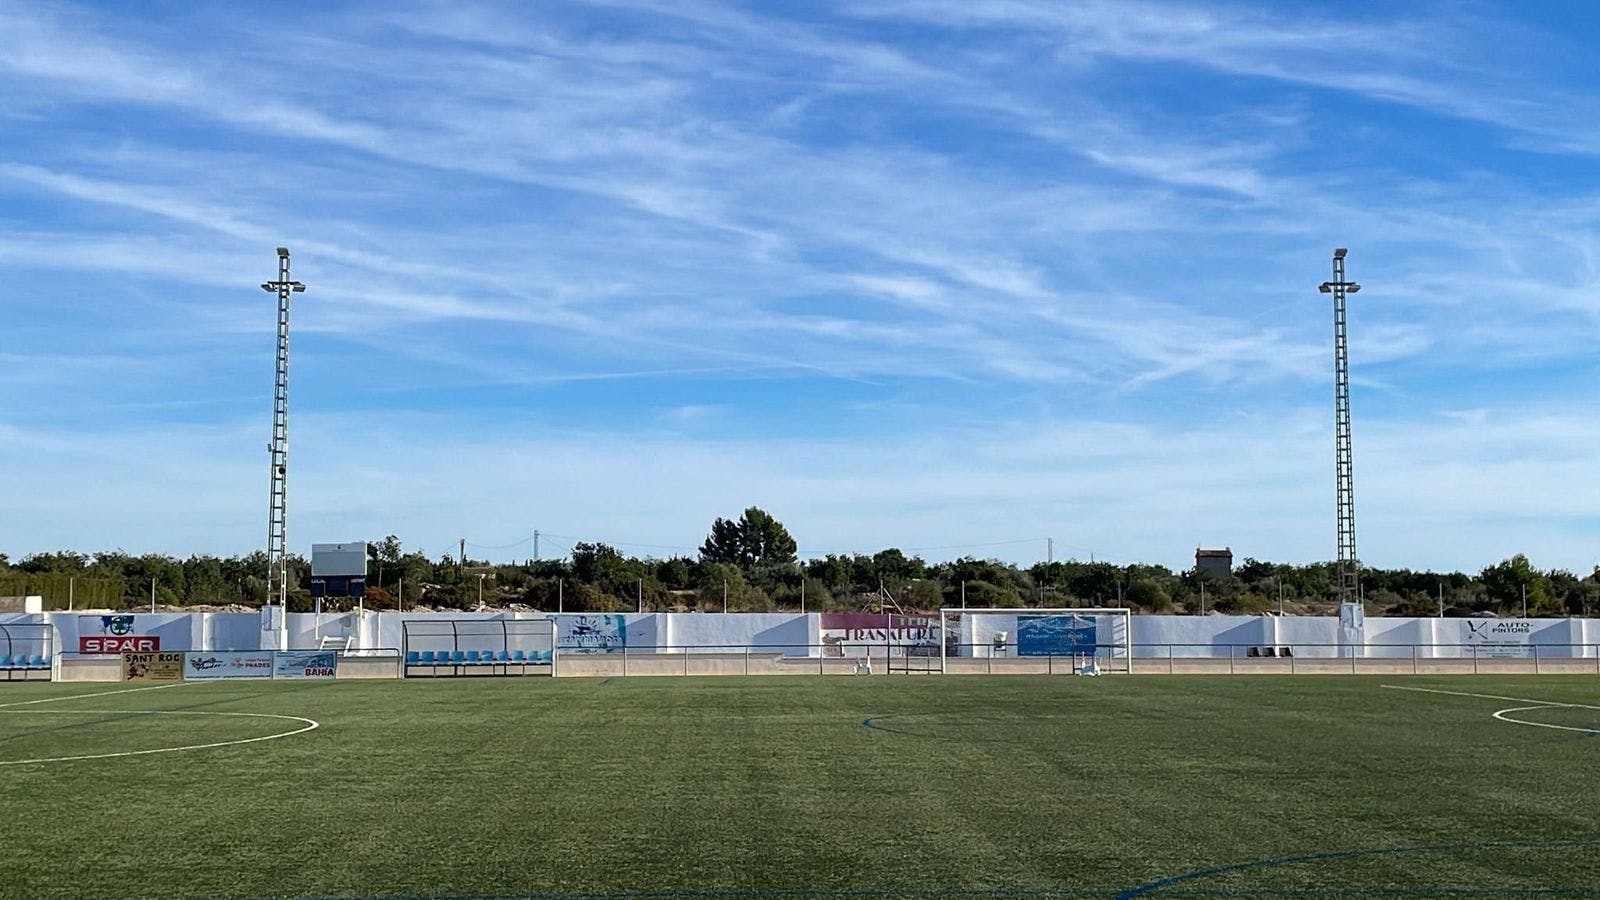 L’Ajuntament de l’Ampolla renova l’enllumenat del Camp de Futbol Municipal instal·lant projectors amb tecnologia LED